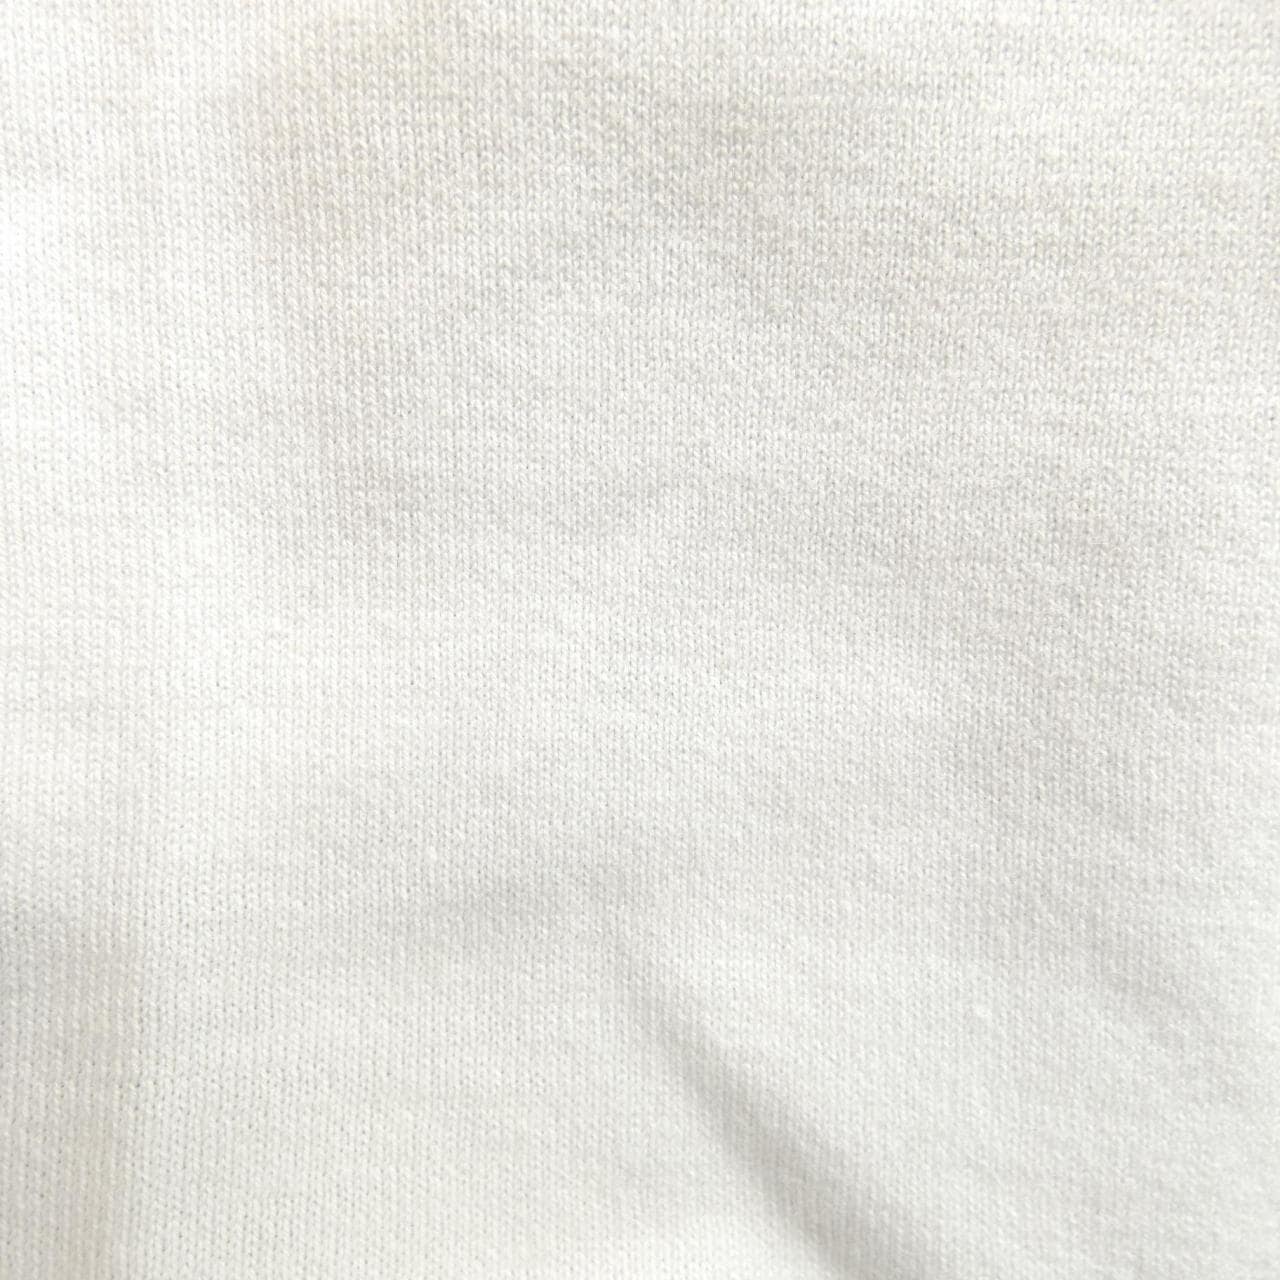 ルシアン ペラフィネ lucien pellat-finet Tシャツ